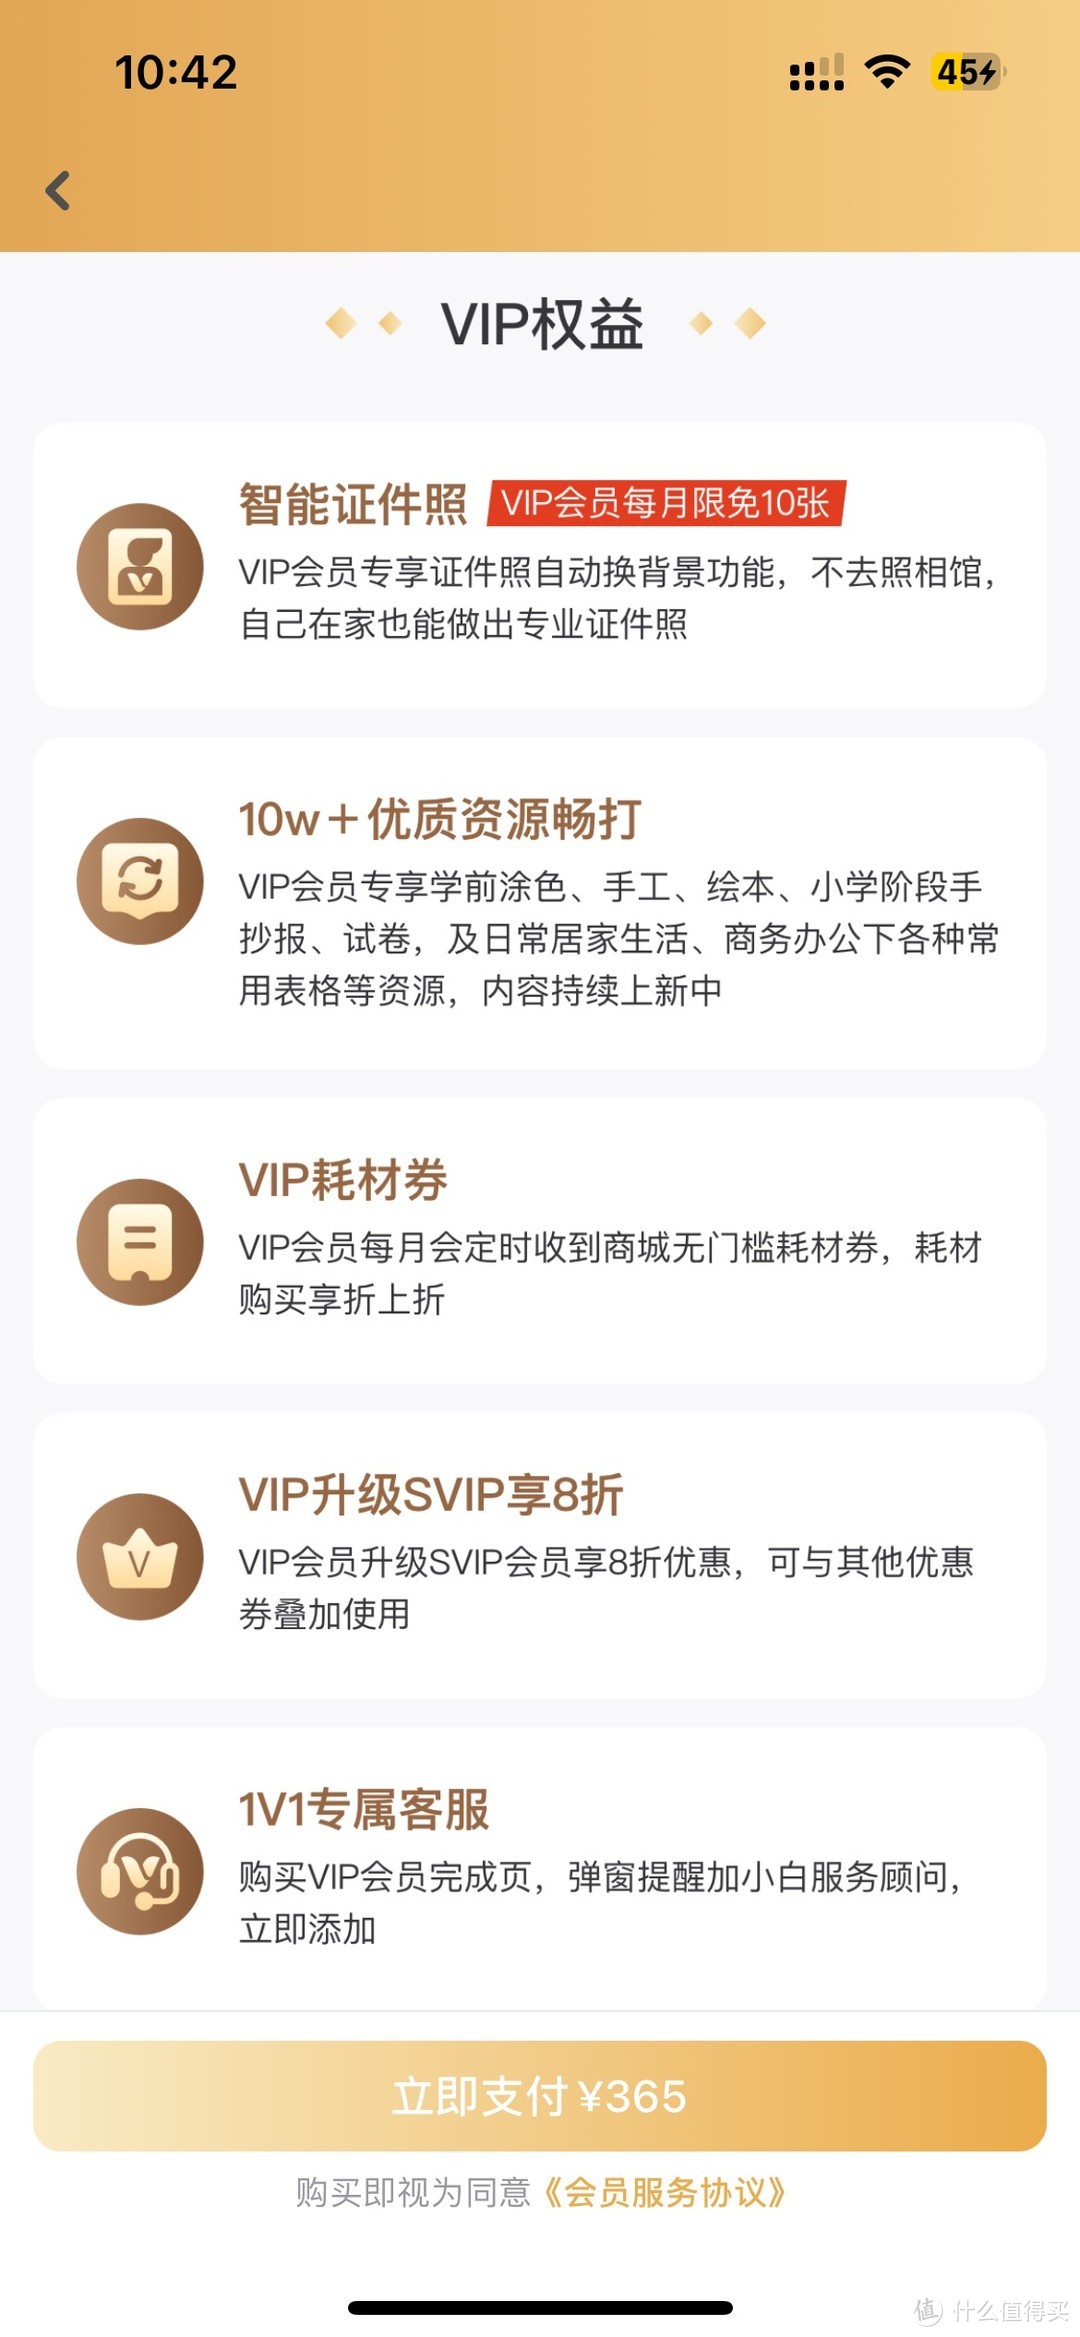 VIP会员算个啥？SVIP才是个啥！京东智印VIP会员体验分享～